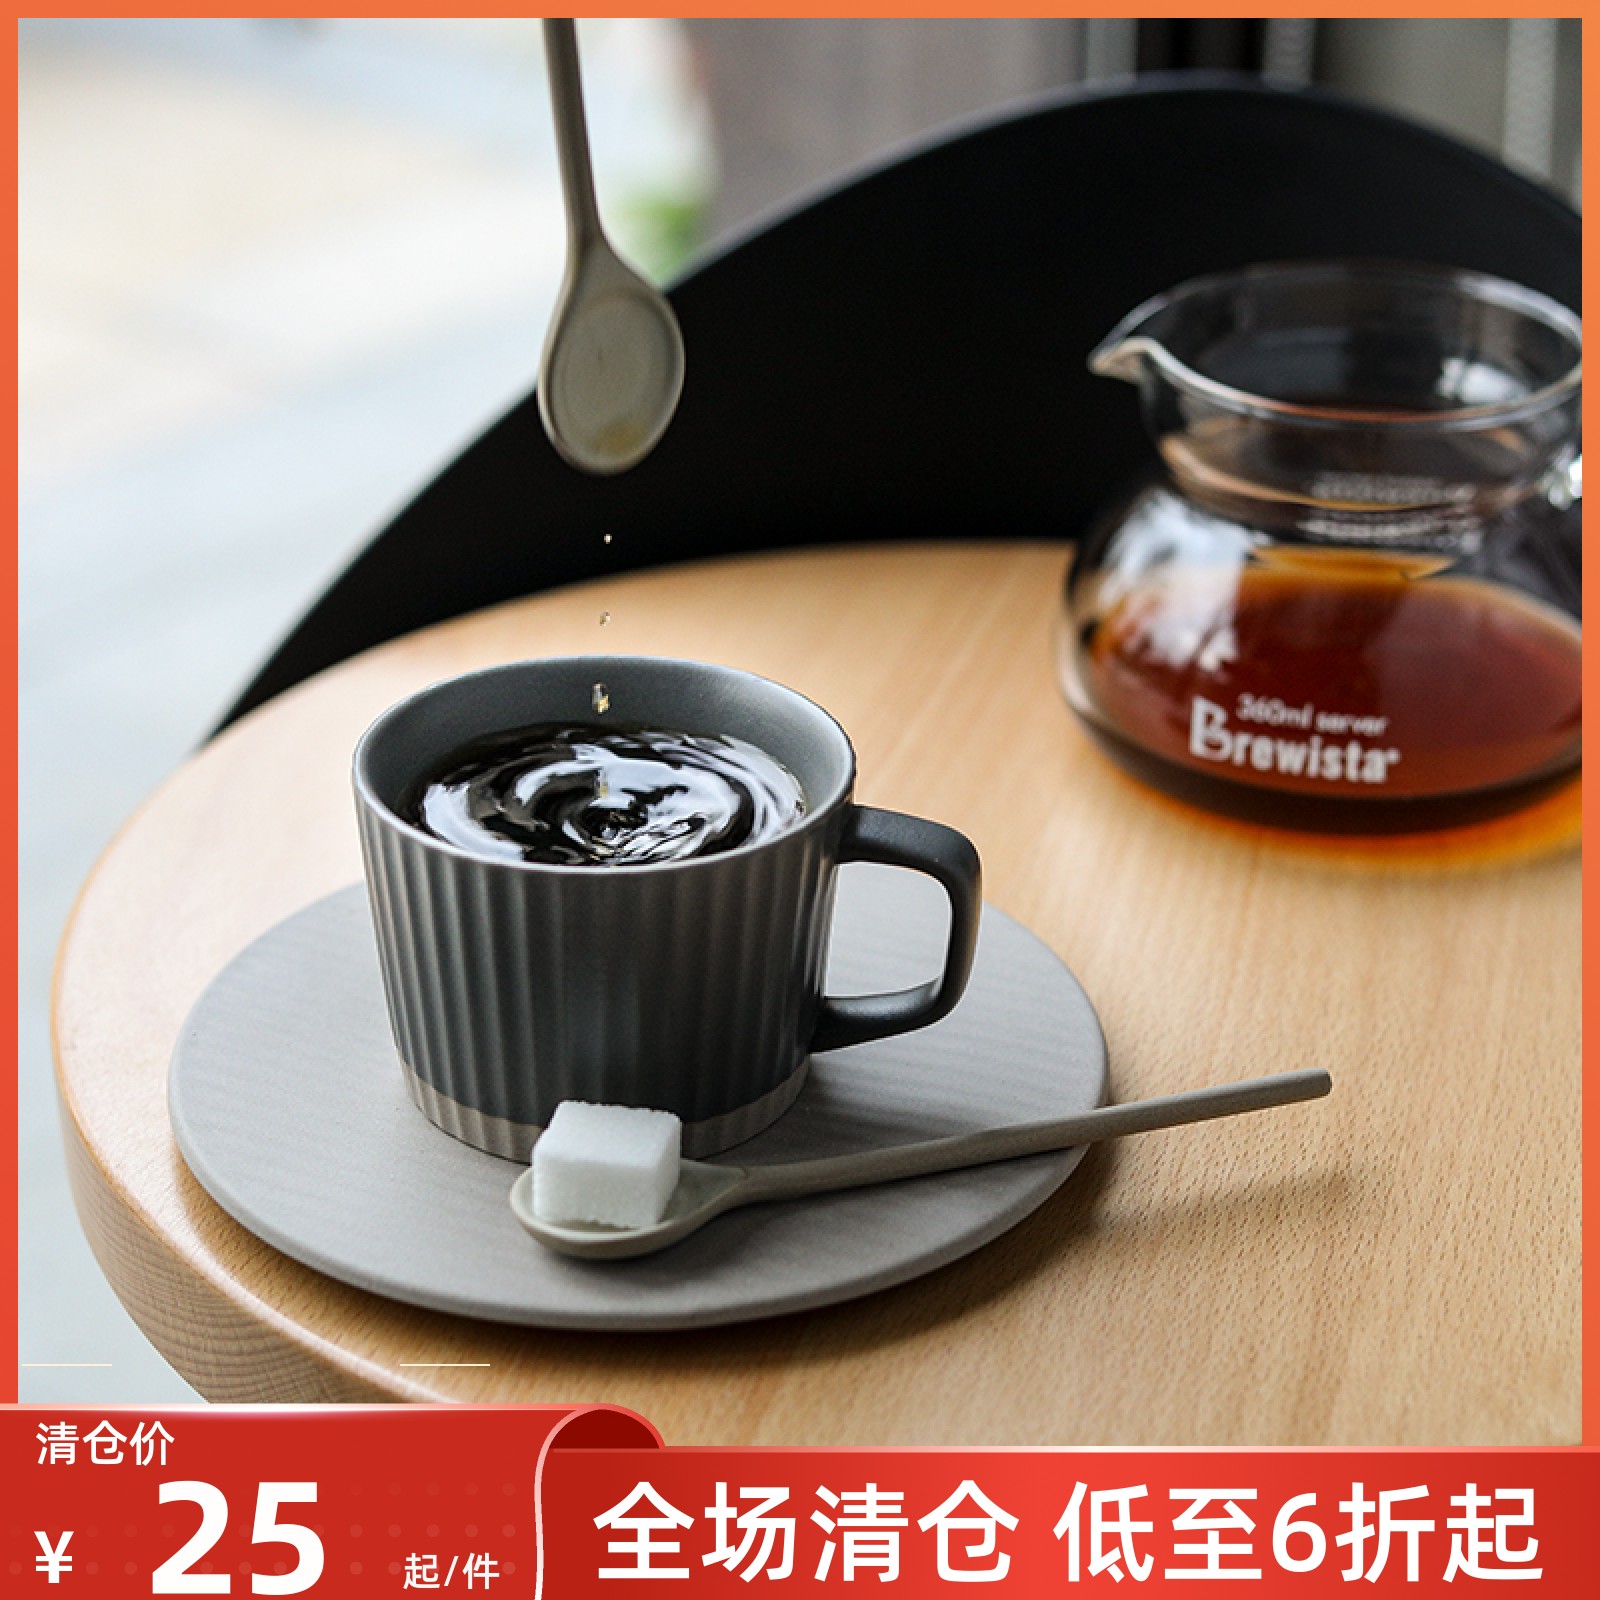 日式豎條紋咖啡杯180ml 創意手工制陶瓷拿鐵杯 家居下午茶杯帶碟